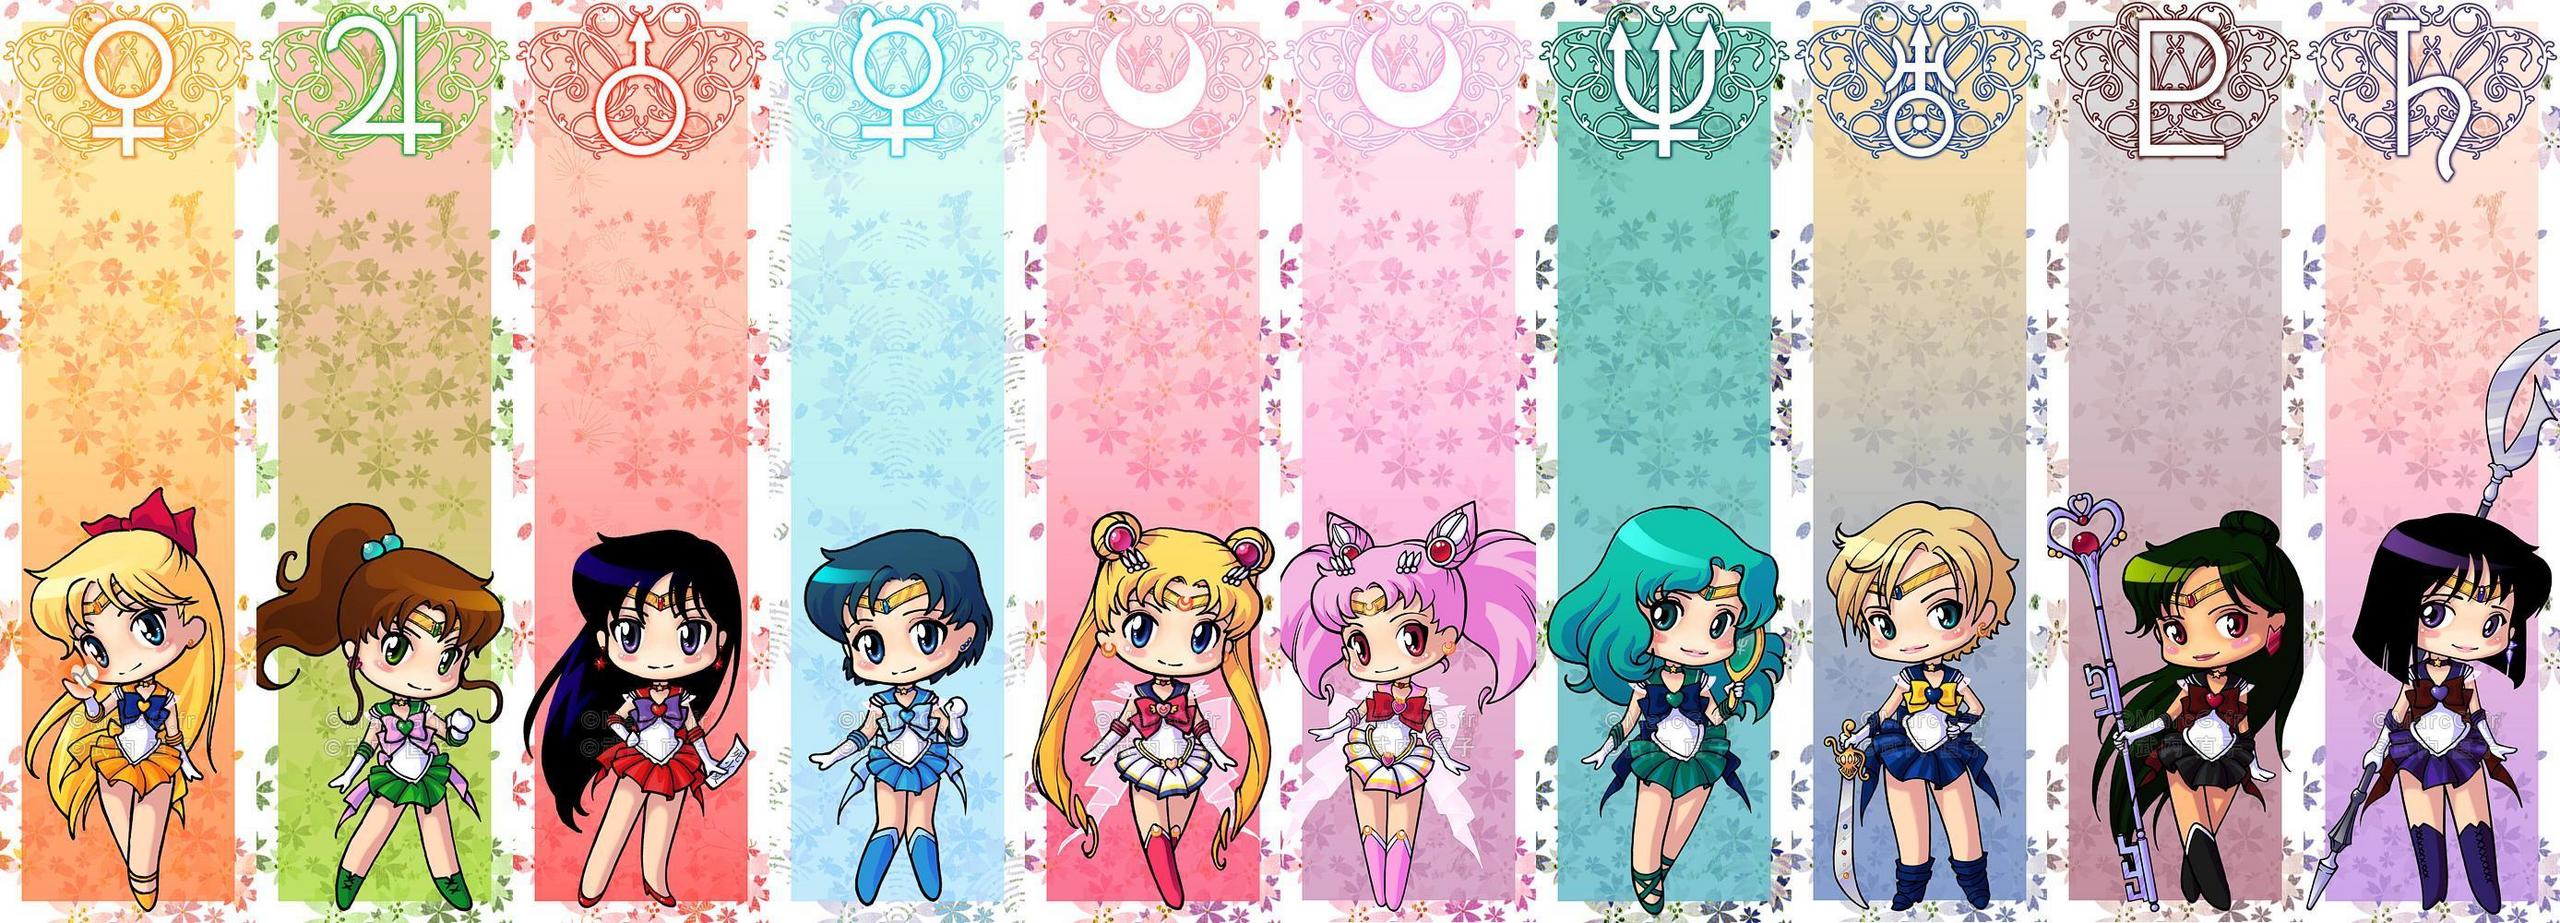 Sailor Moon facebook picture, Sailor Moon facebook wallpaper